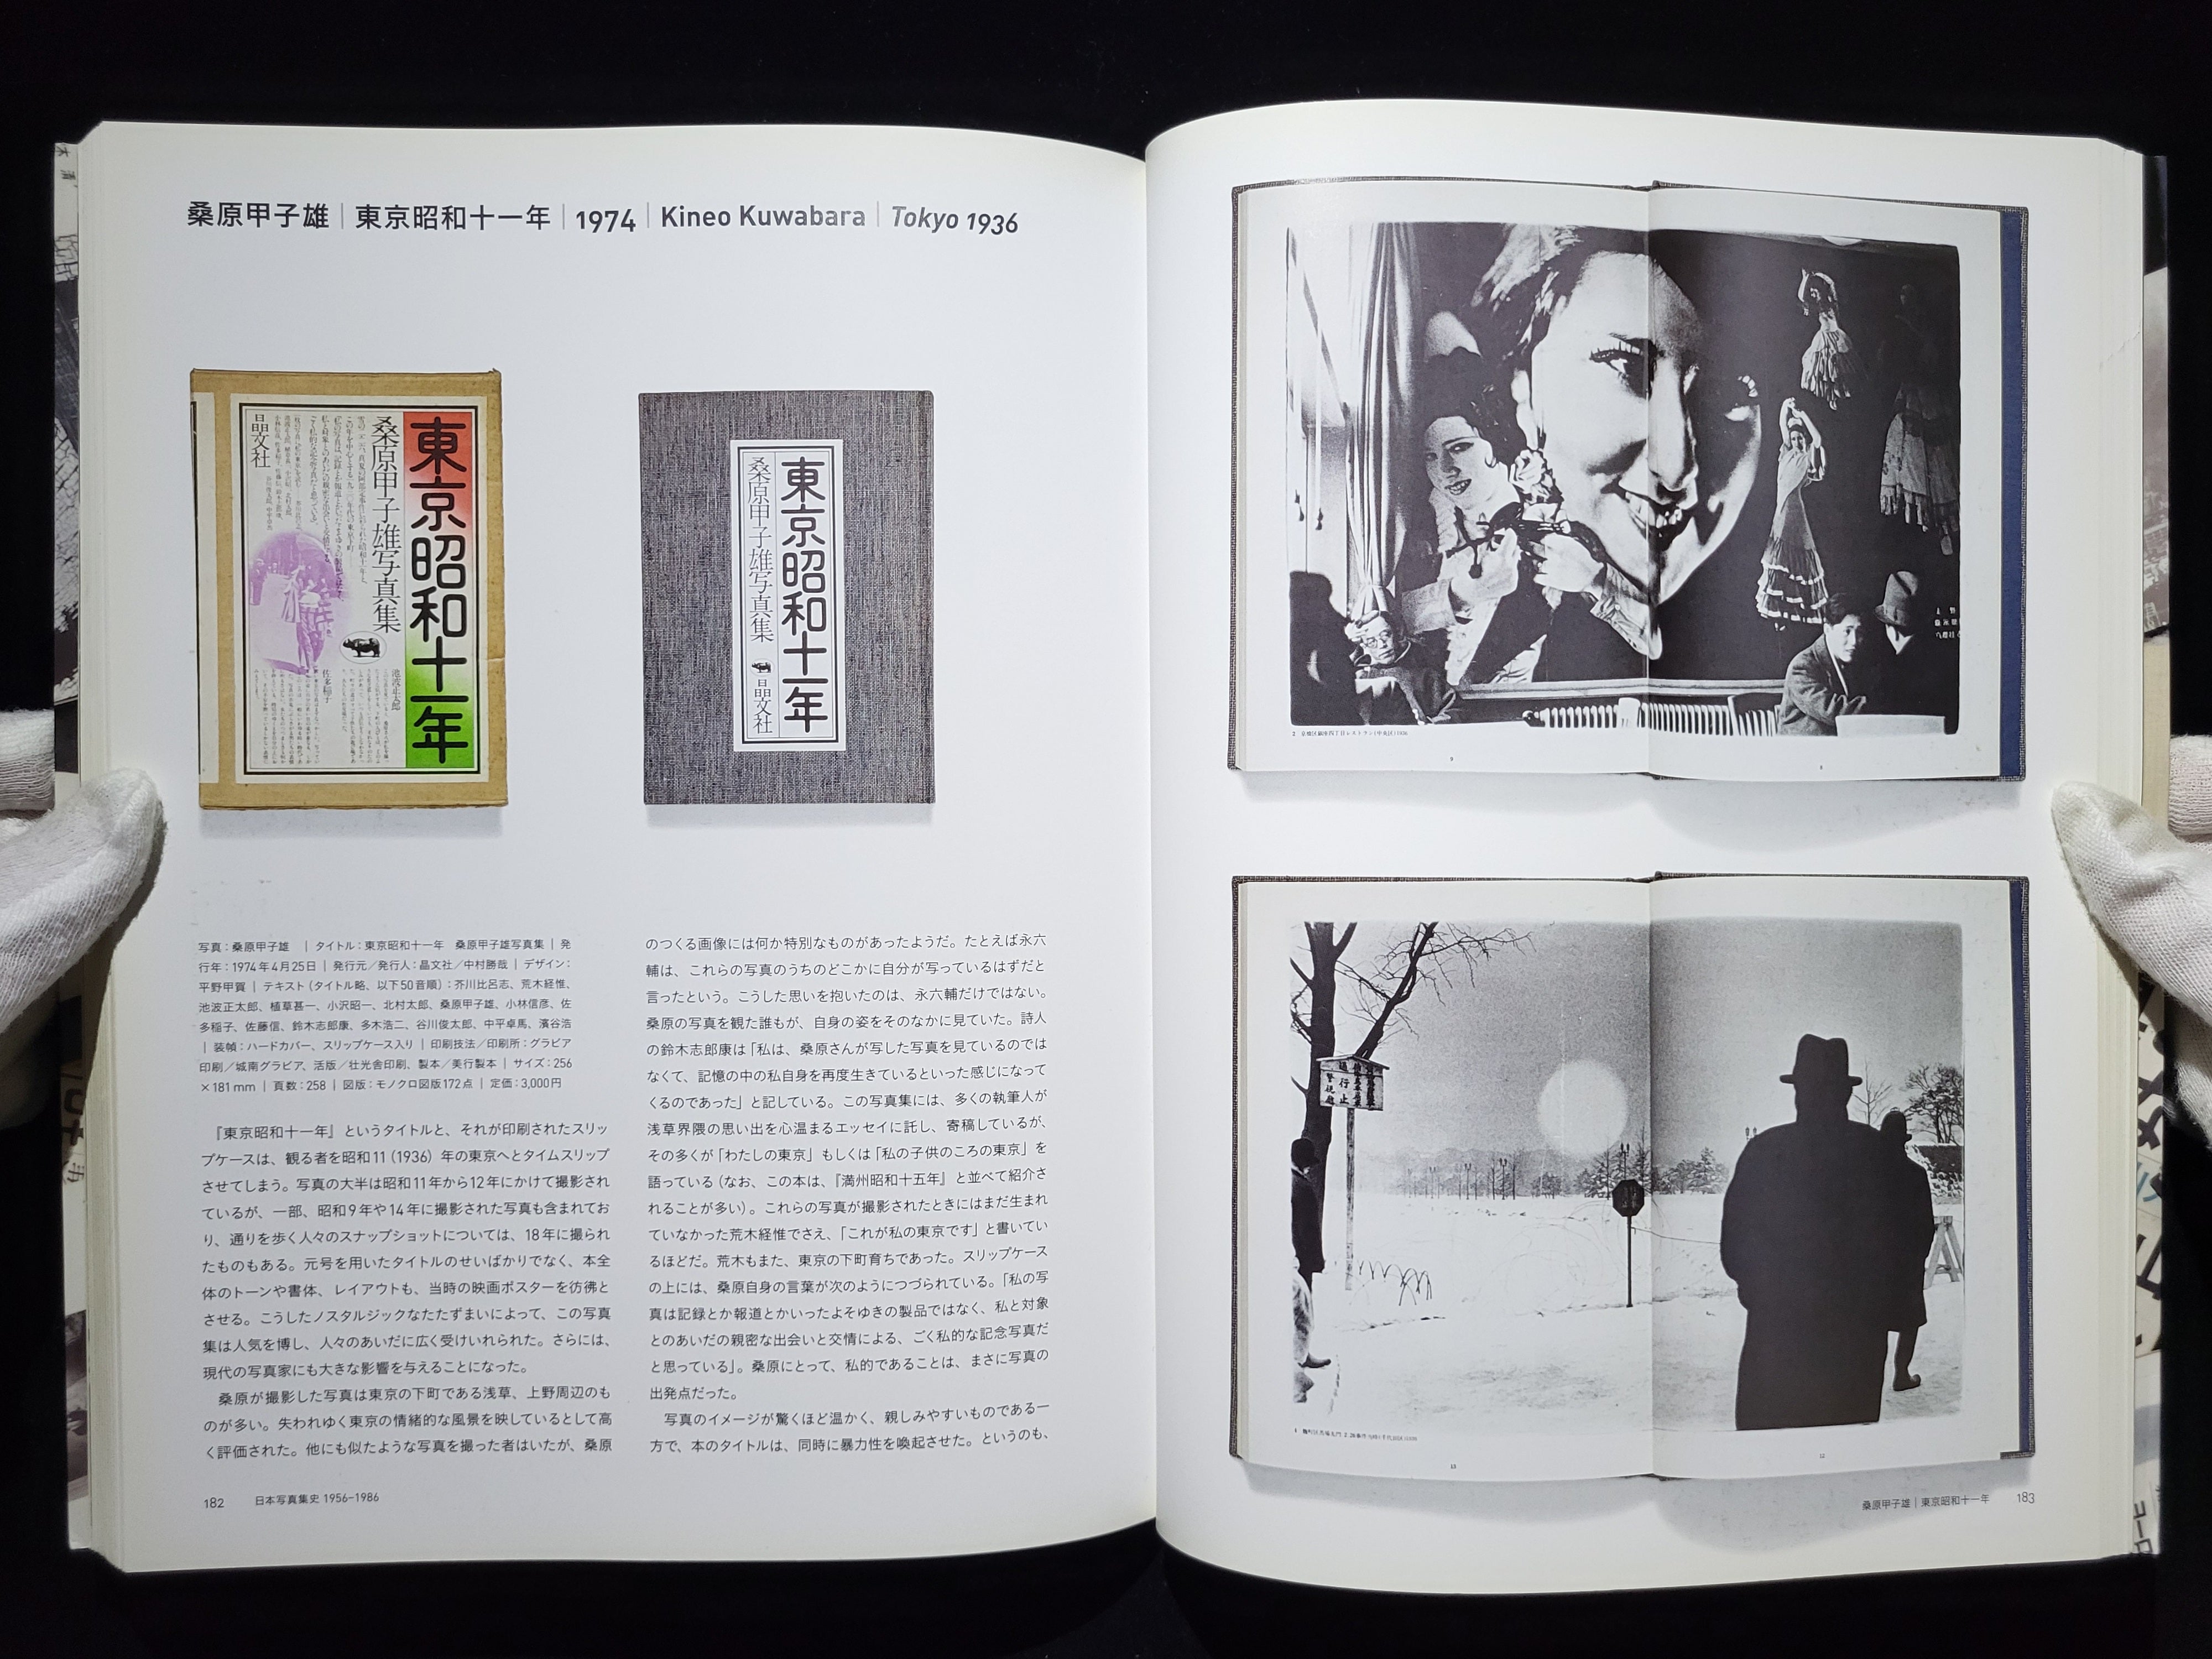 日本写真集史 1956-1986 / 金子隆一 | hiponoz攝影書店